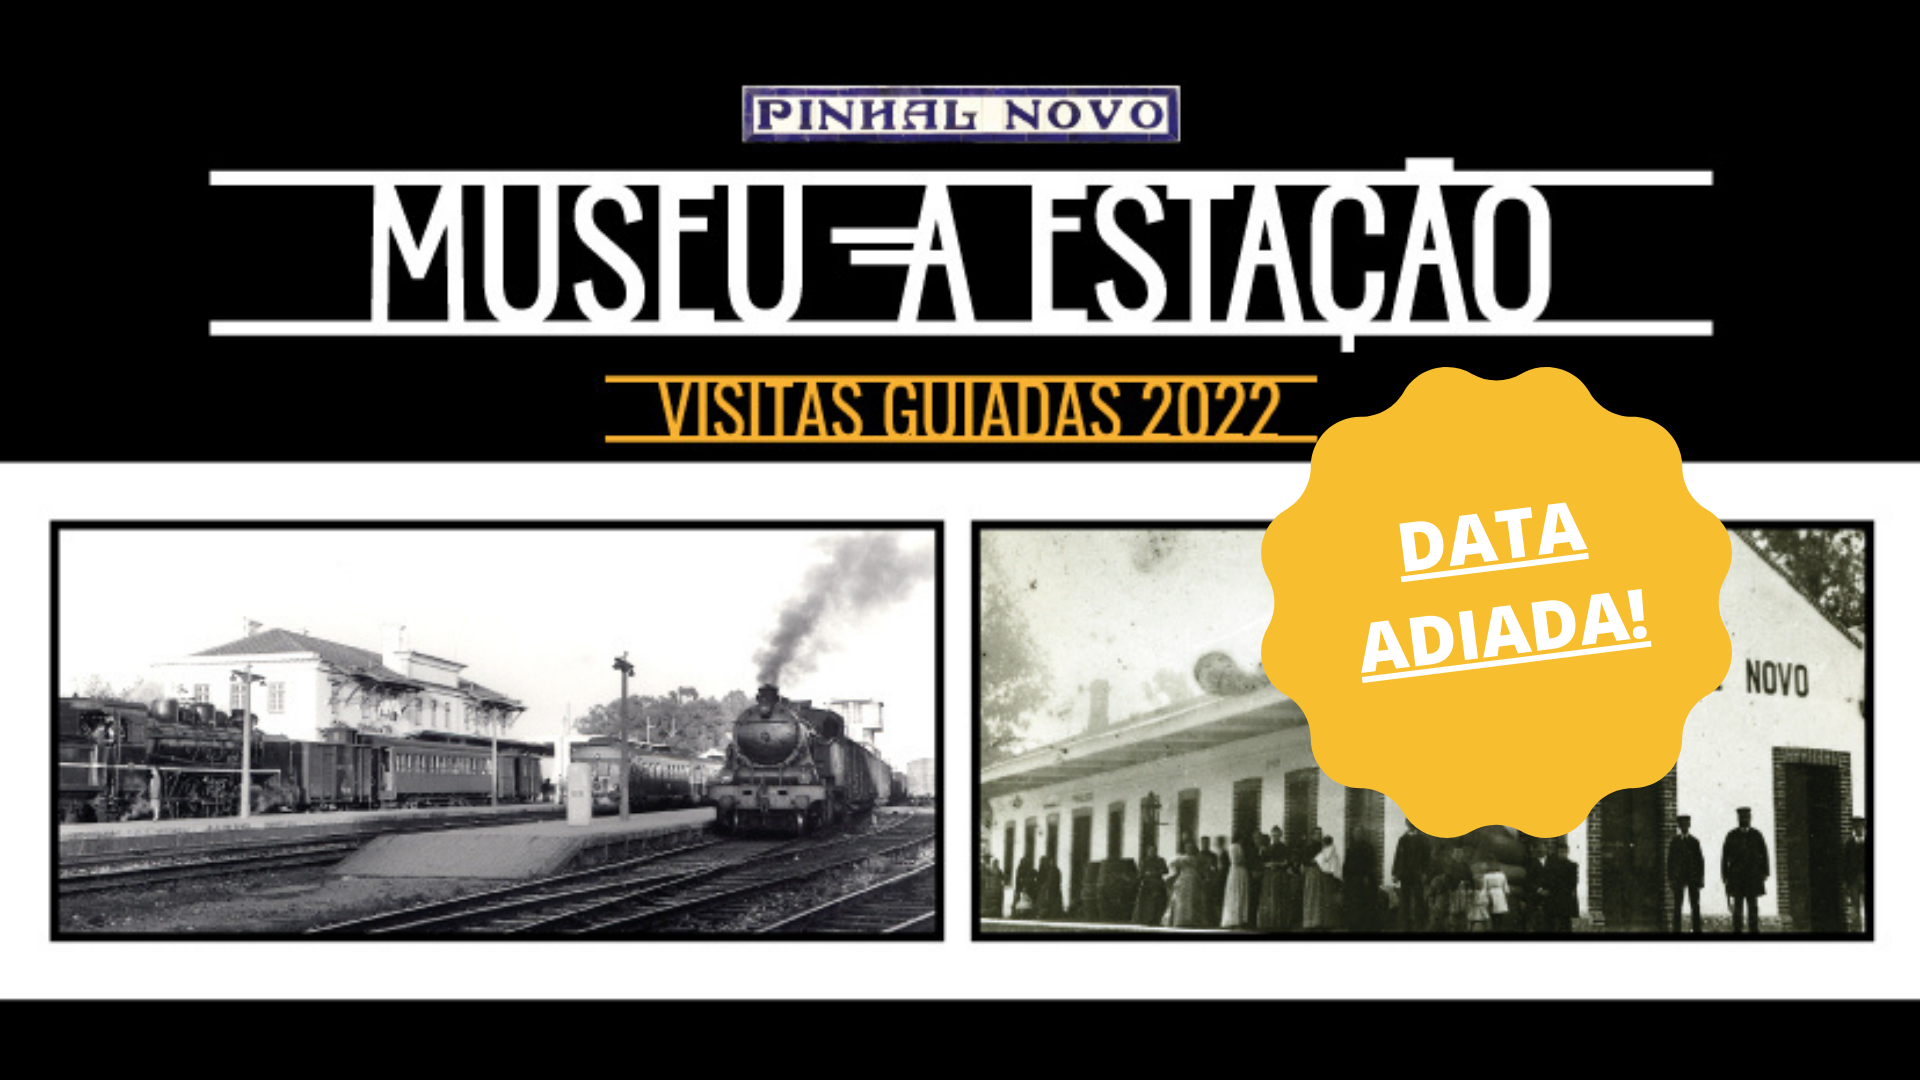 Museu - A Estação: Visita de novembro adiada